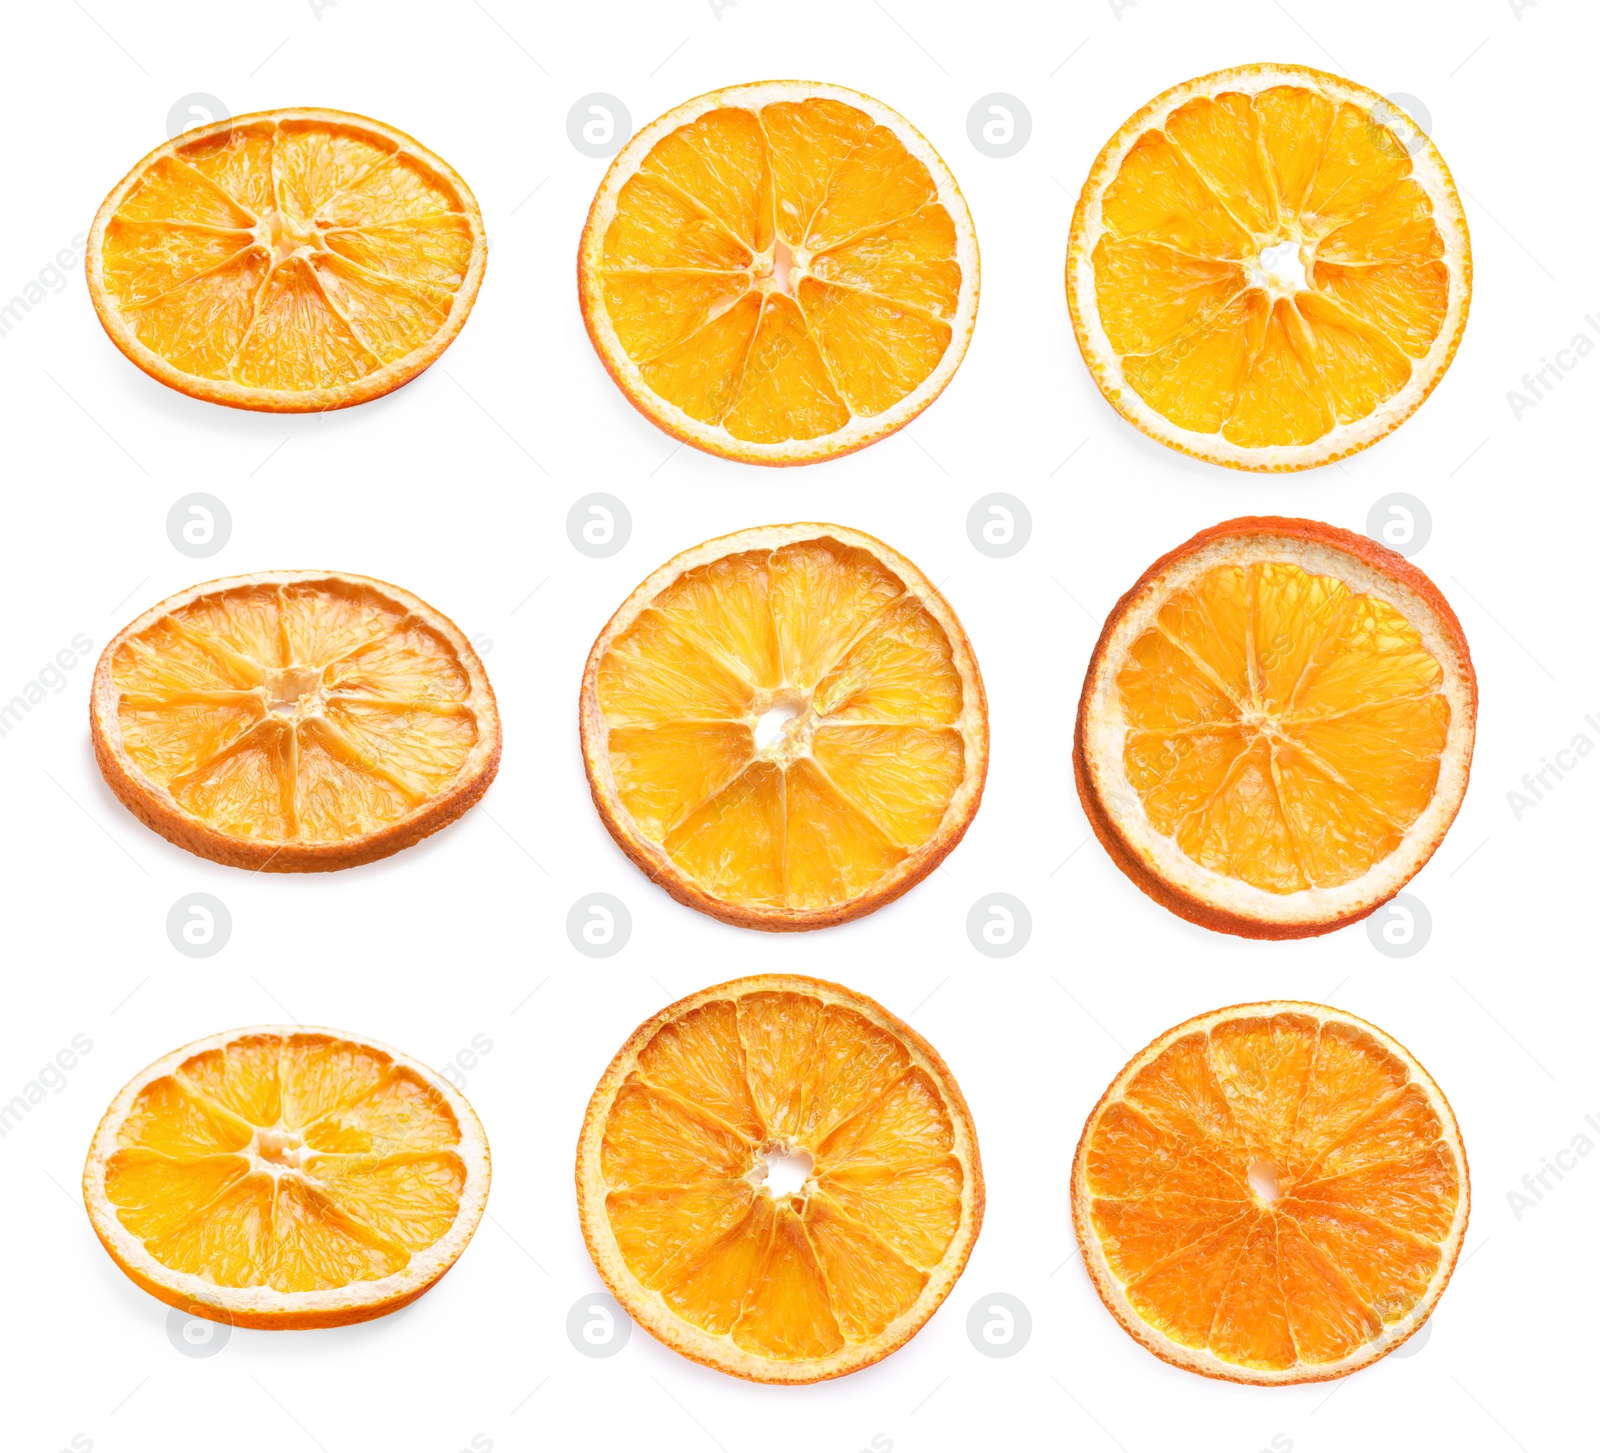 Image of Many dry orange slices on white background